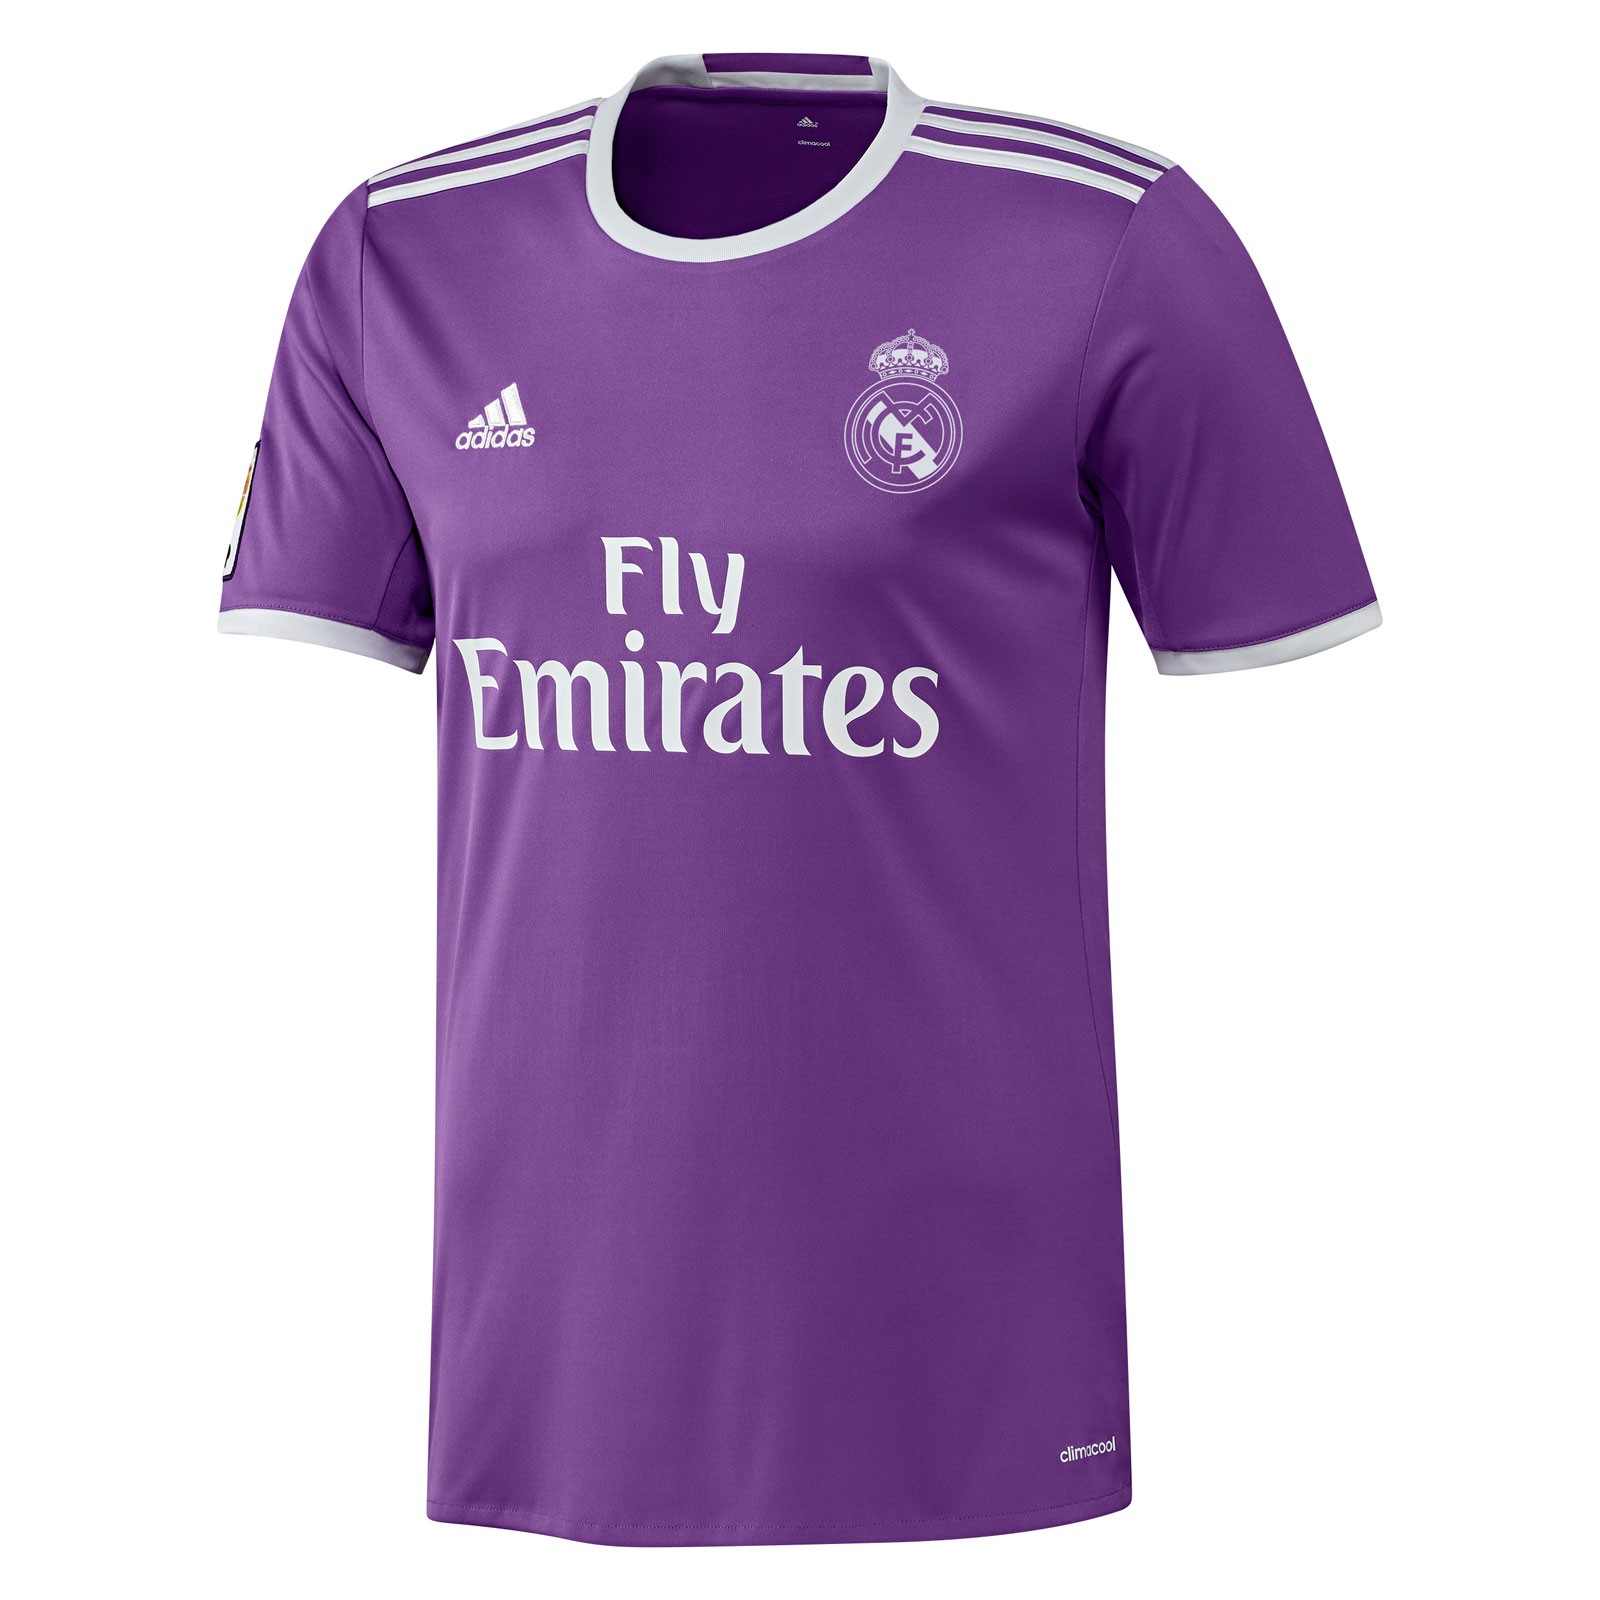 皇家马德里2016-17赛季球迷版客场球衣